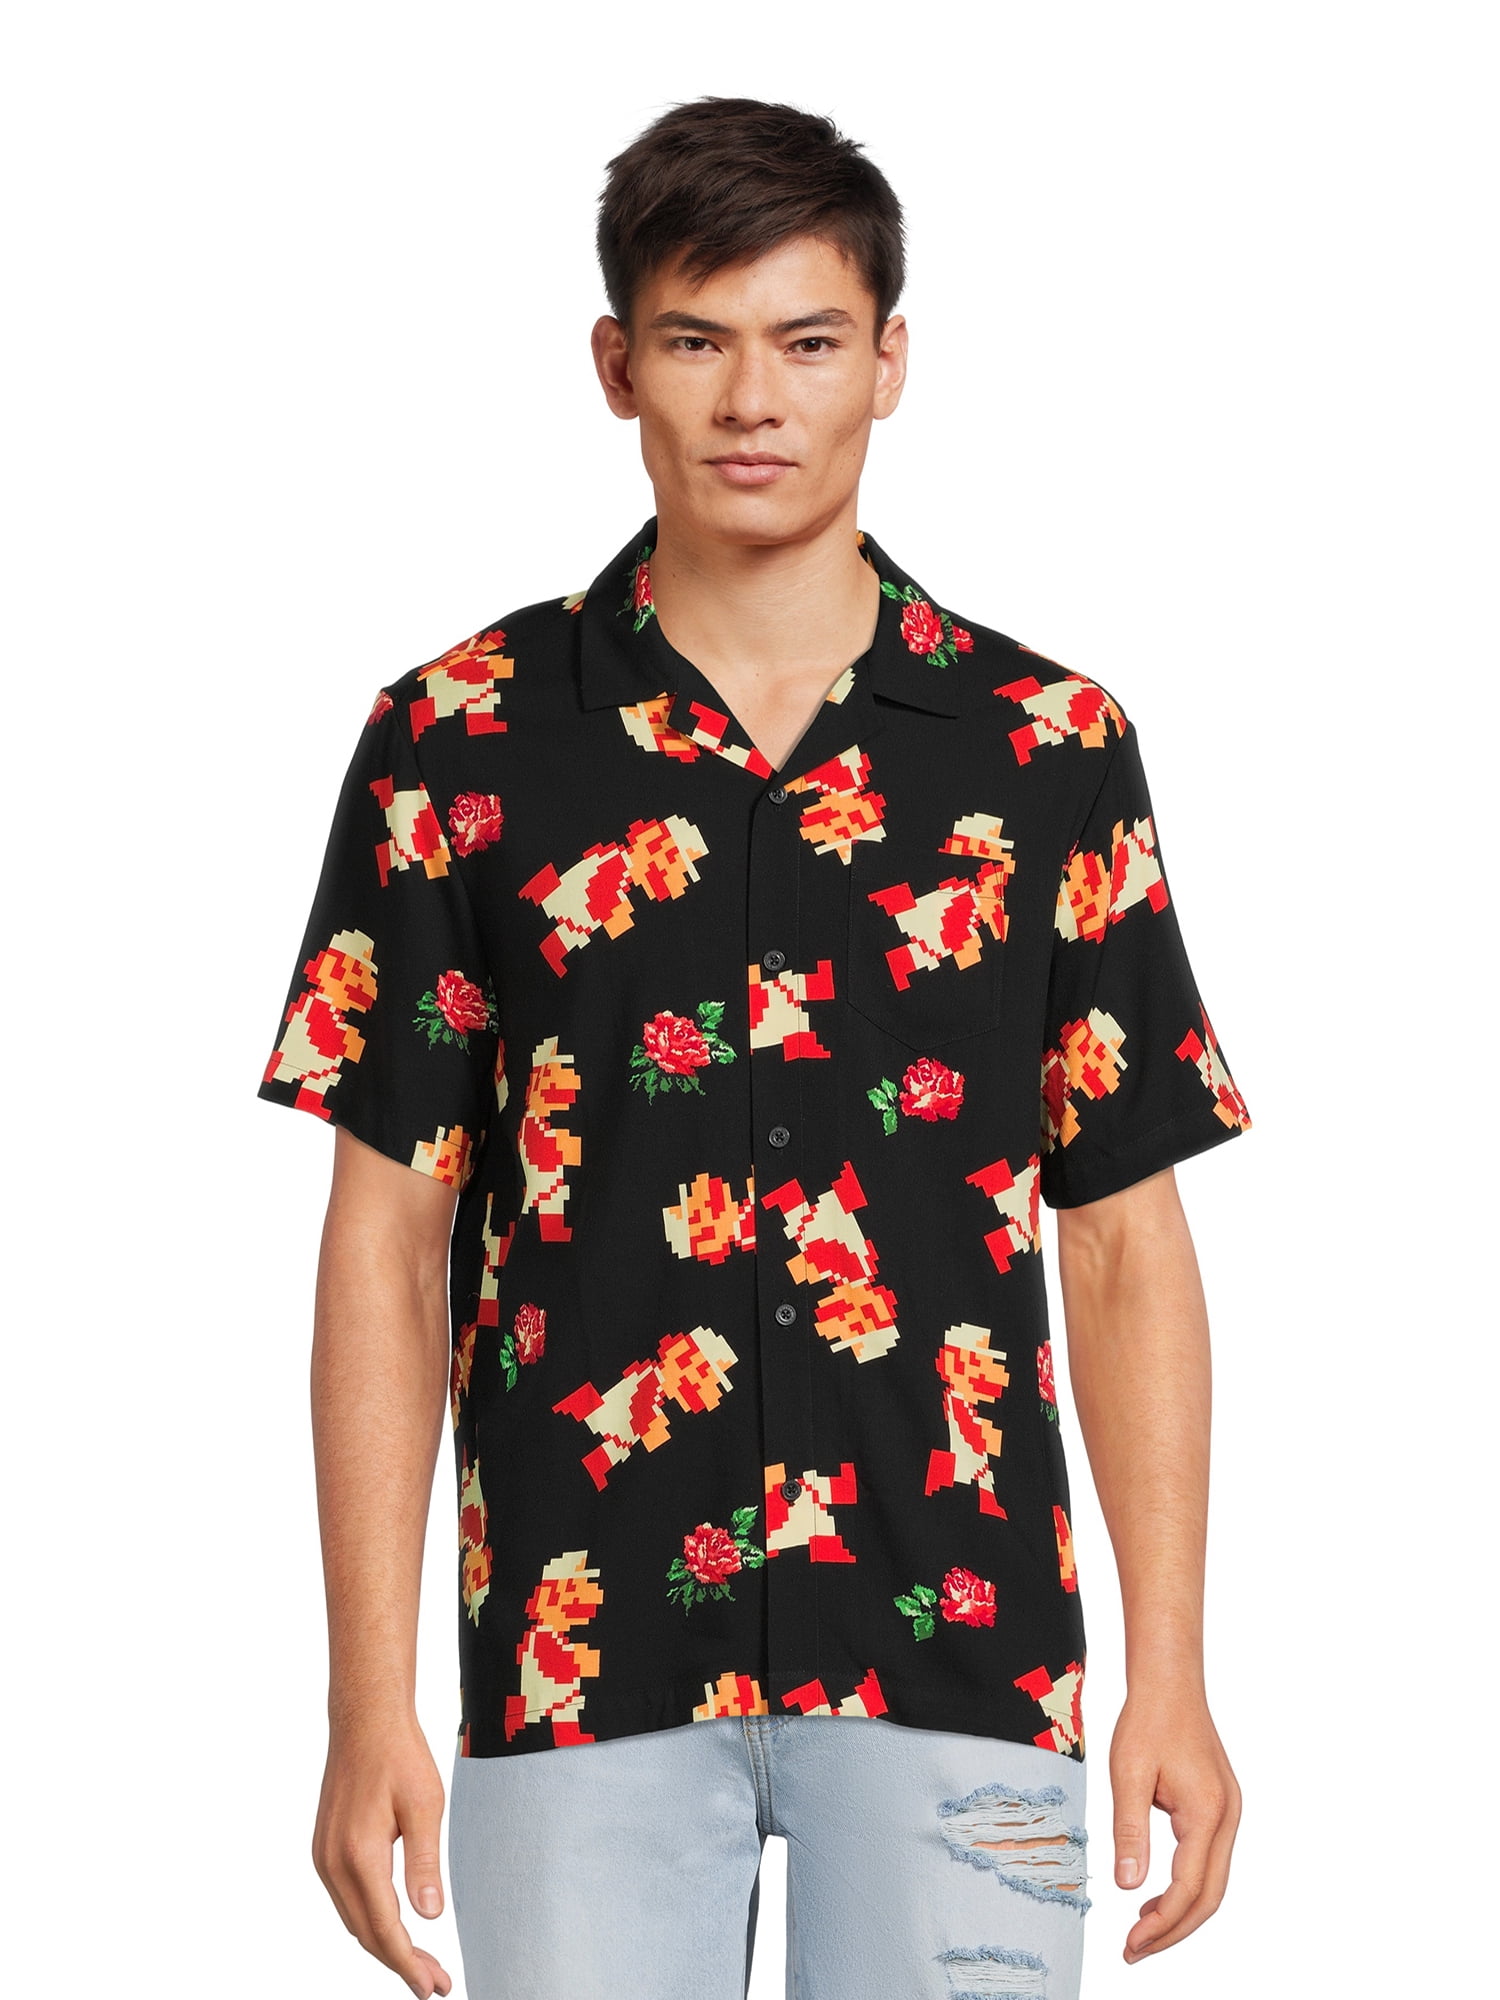 Super Mario Men's Floral Graphic Button Up Shirt, Size S-3XL - Walmart.com